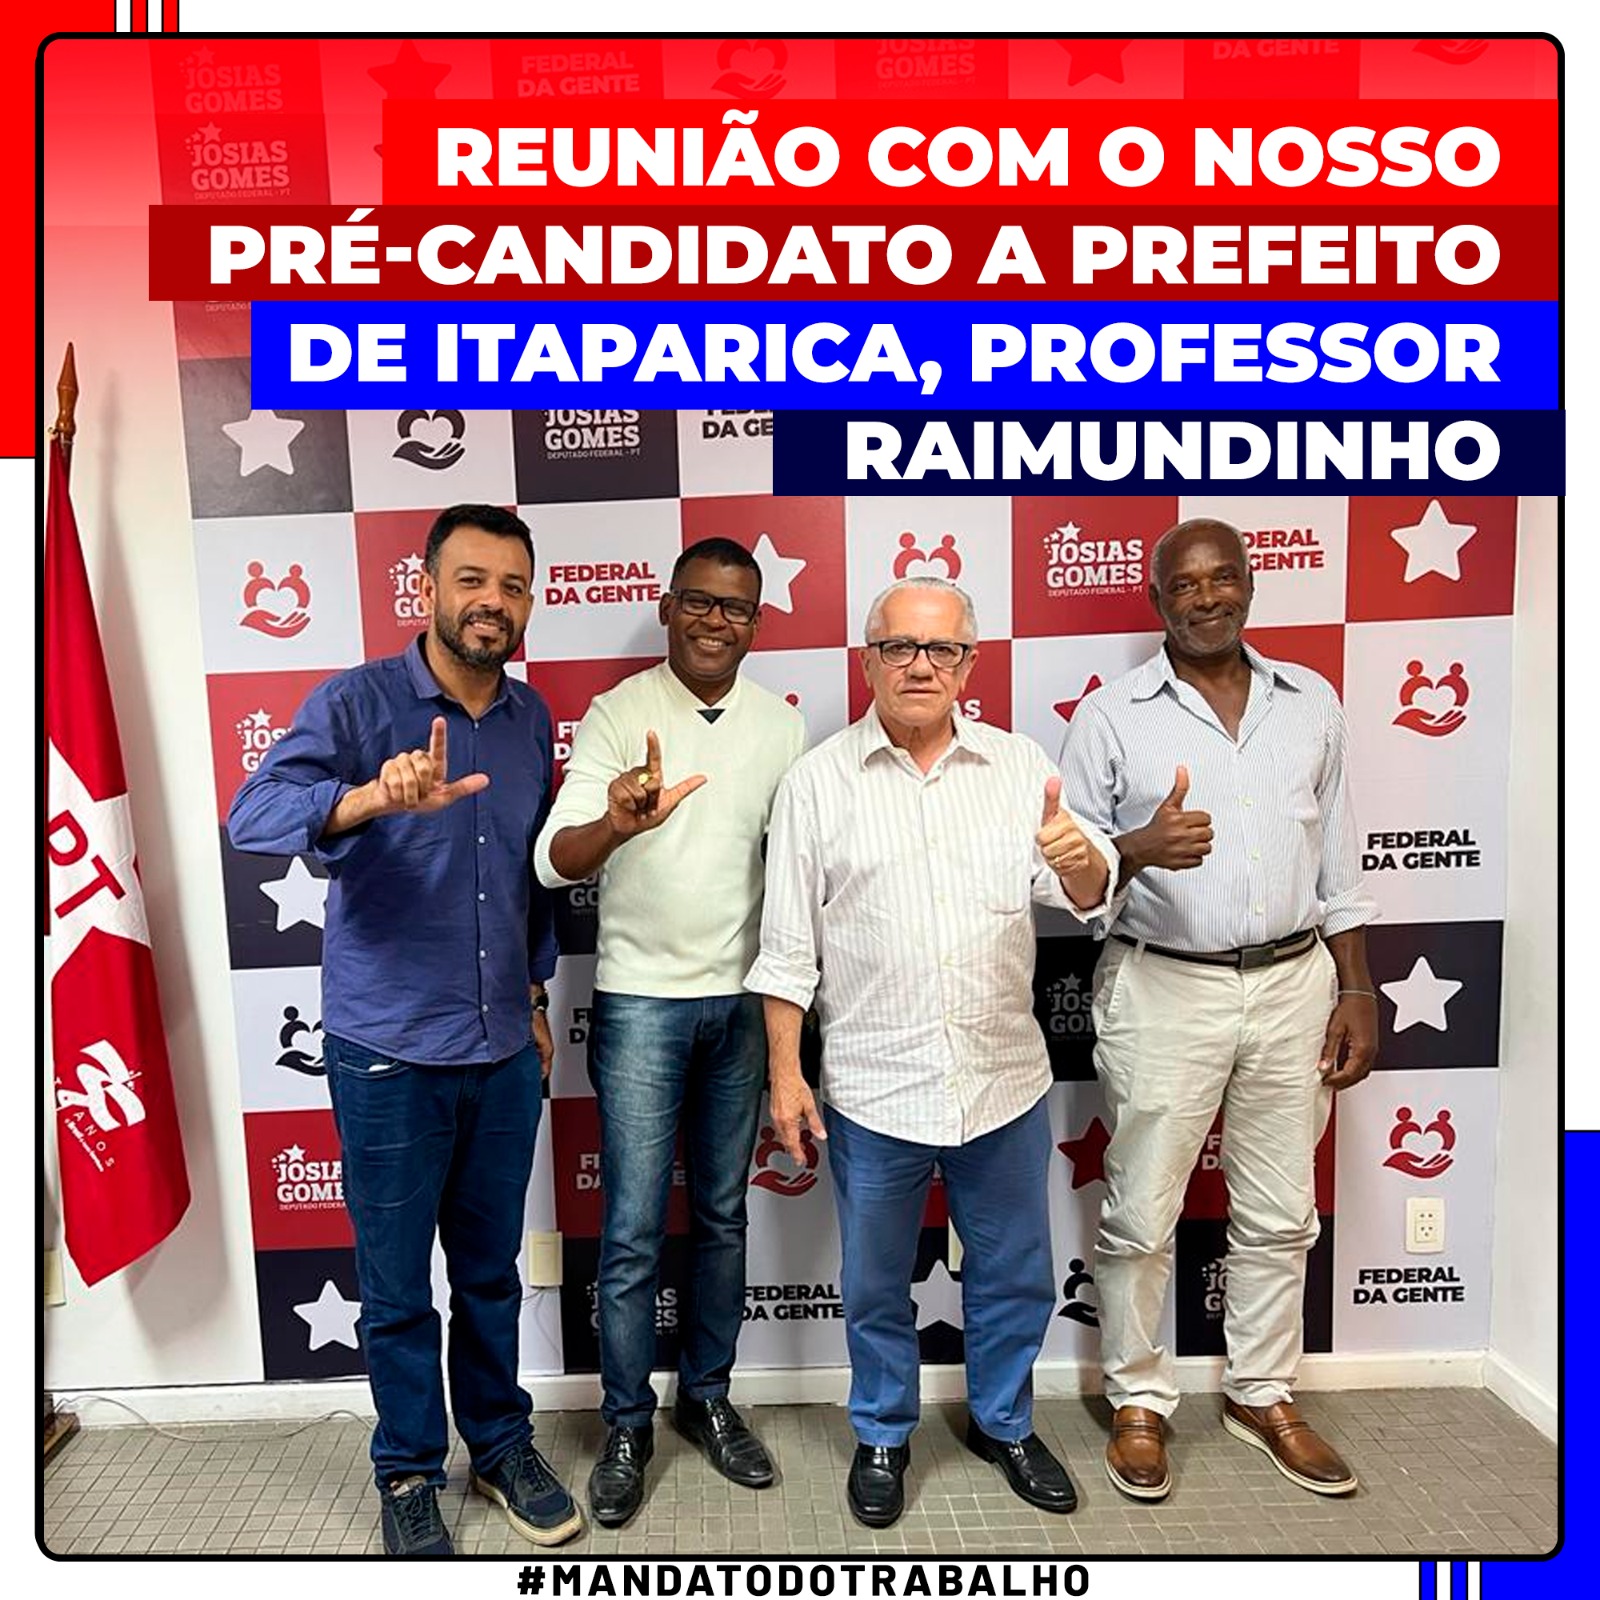 Segue O Líder Professor Raimundinho! Vamos Juntos Por Itaparica